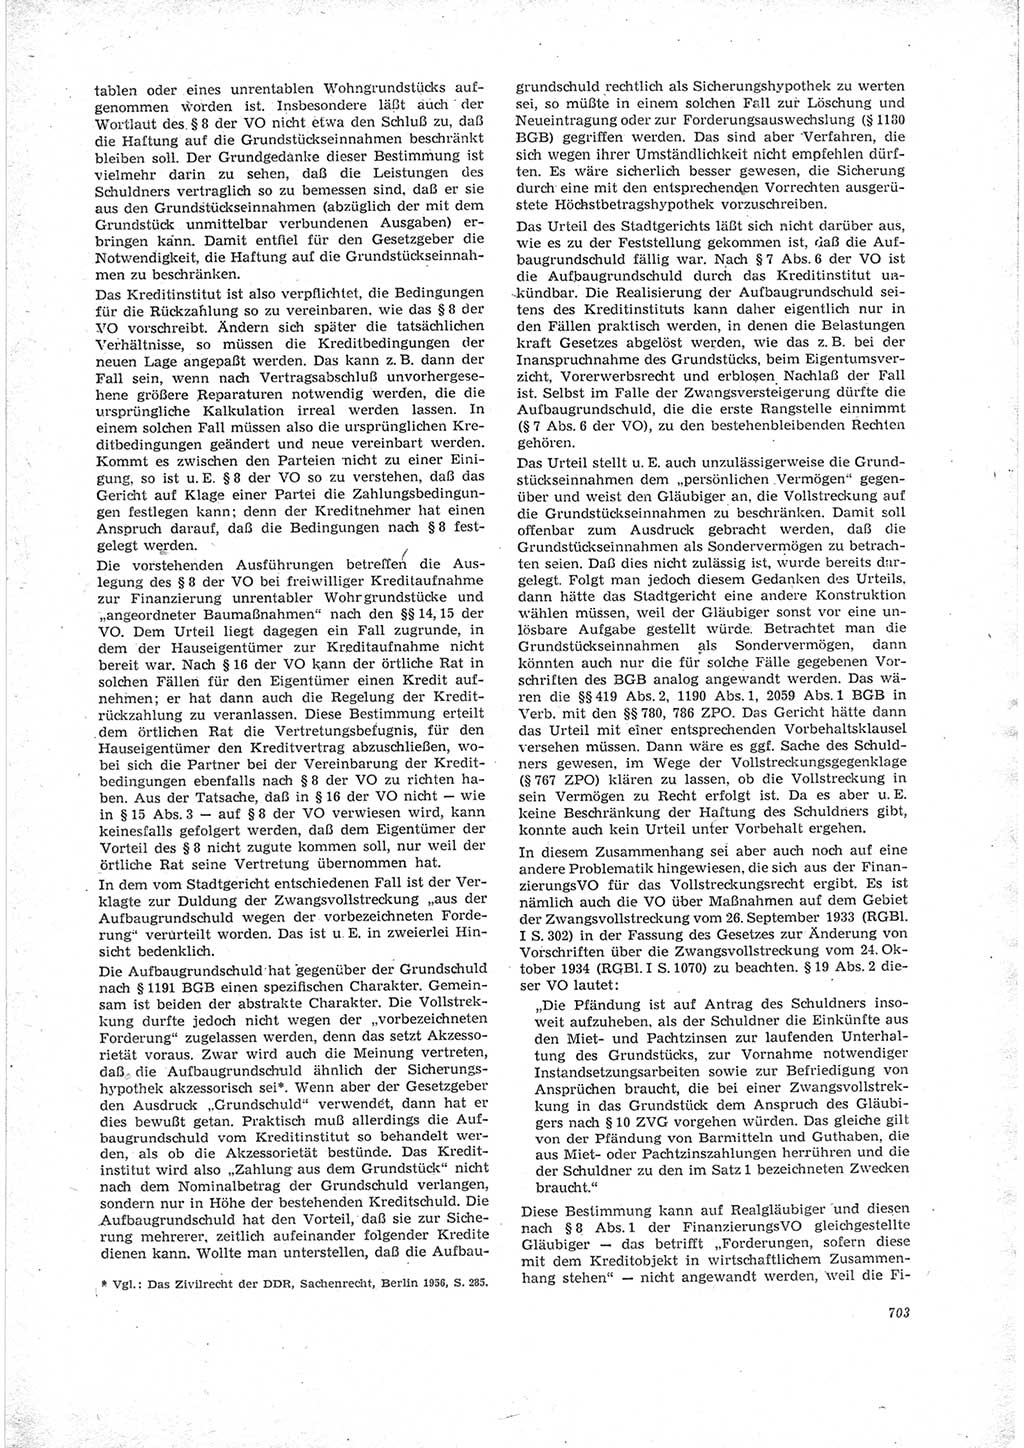 Neue Justiz (NJ), Zeitschrift für Recht und Rechtswissenschaft [Deutsche Demokratische Republik (DDR)], 23. Jahrgang 1969, Seite 703 (NJ DDR 1969, S. 703)